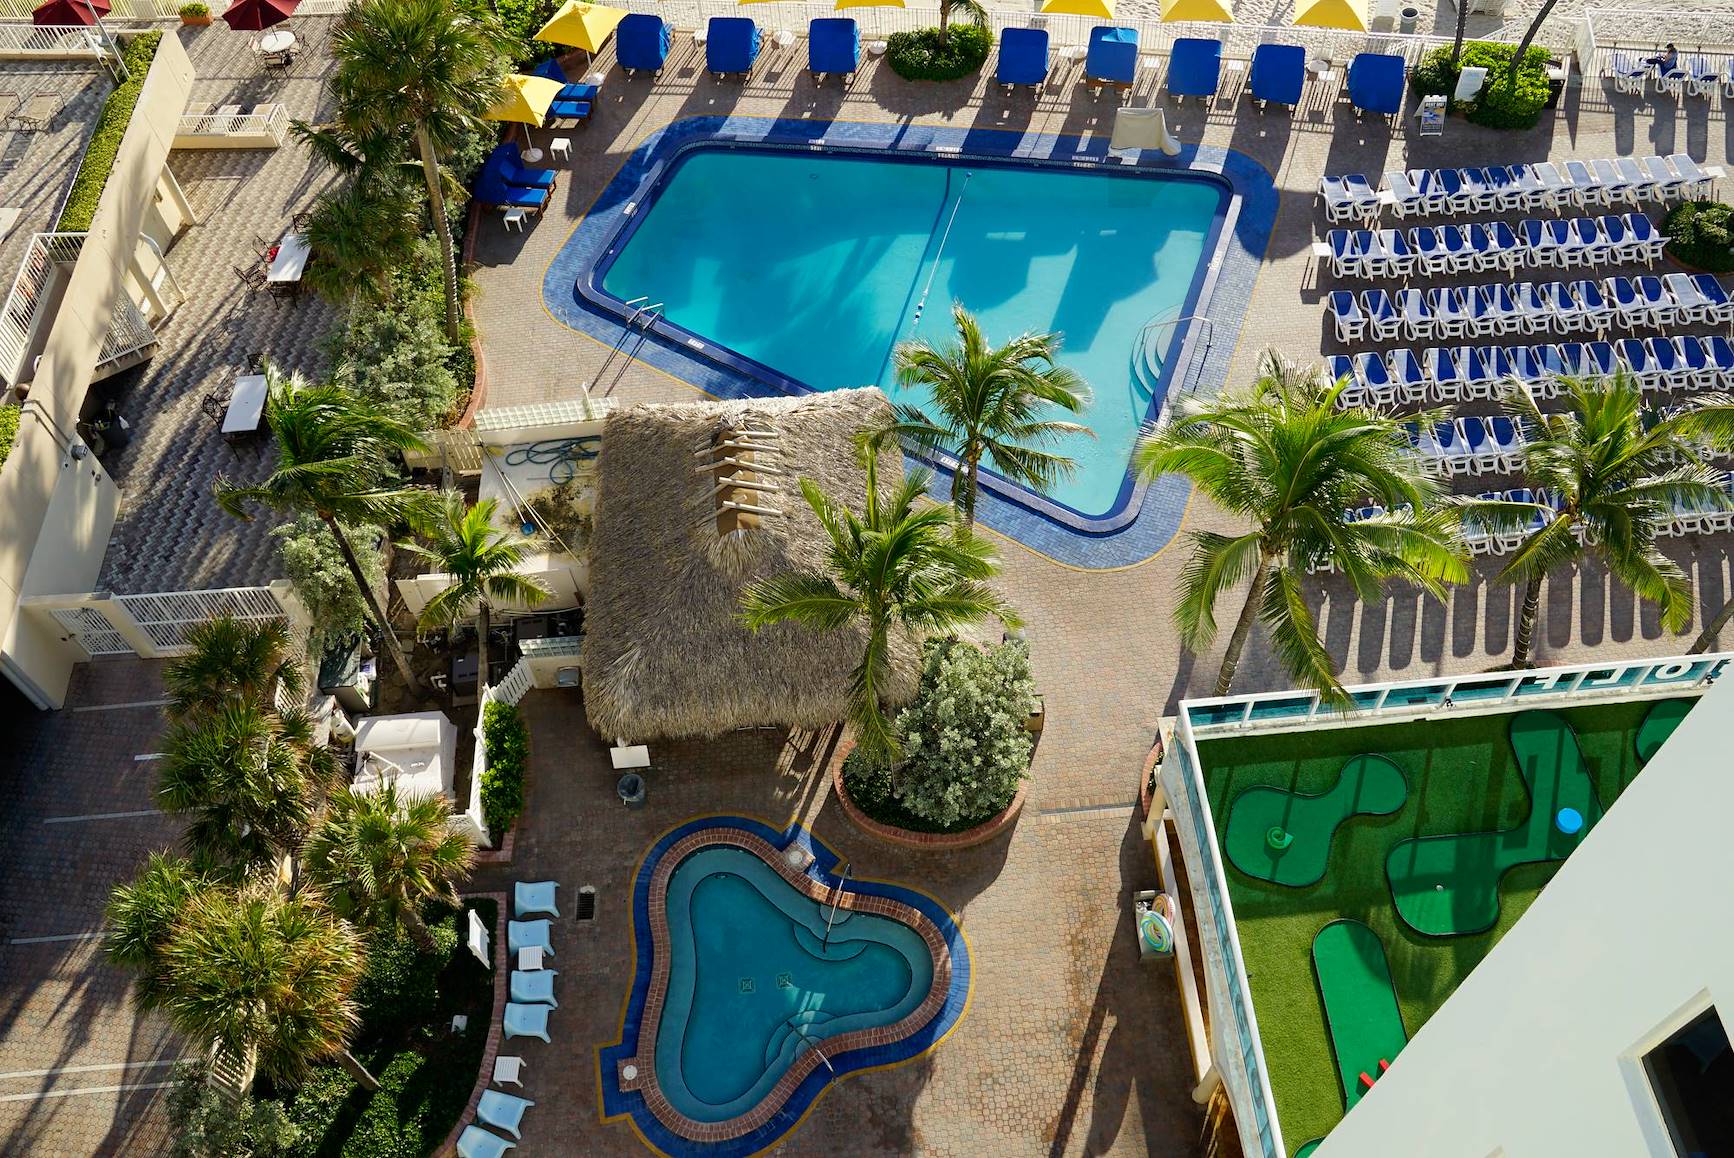 Ocean Sky Hotel-Pool Deck, Spa Tub & Tiki Bar